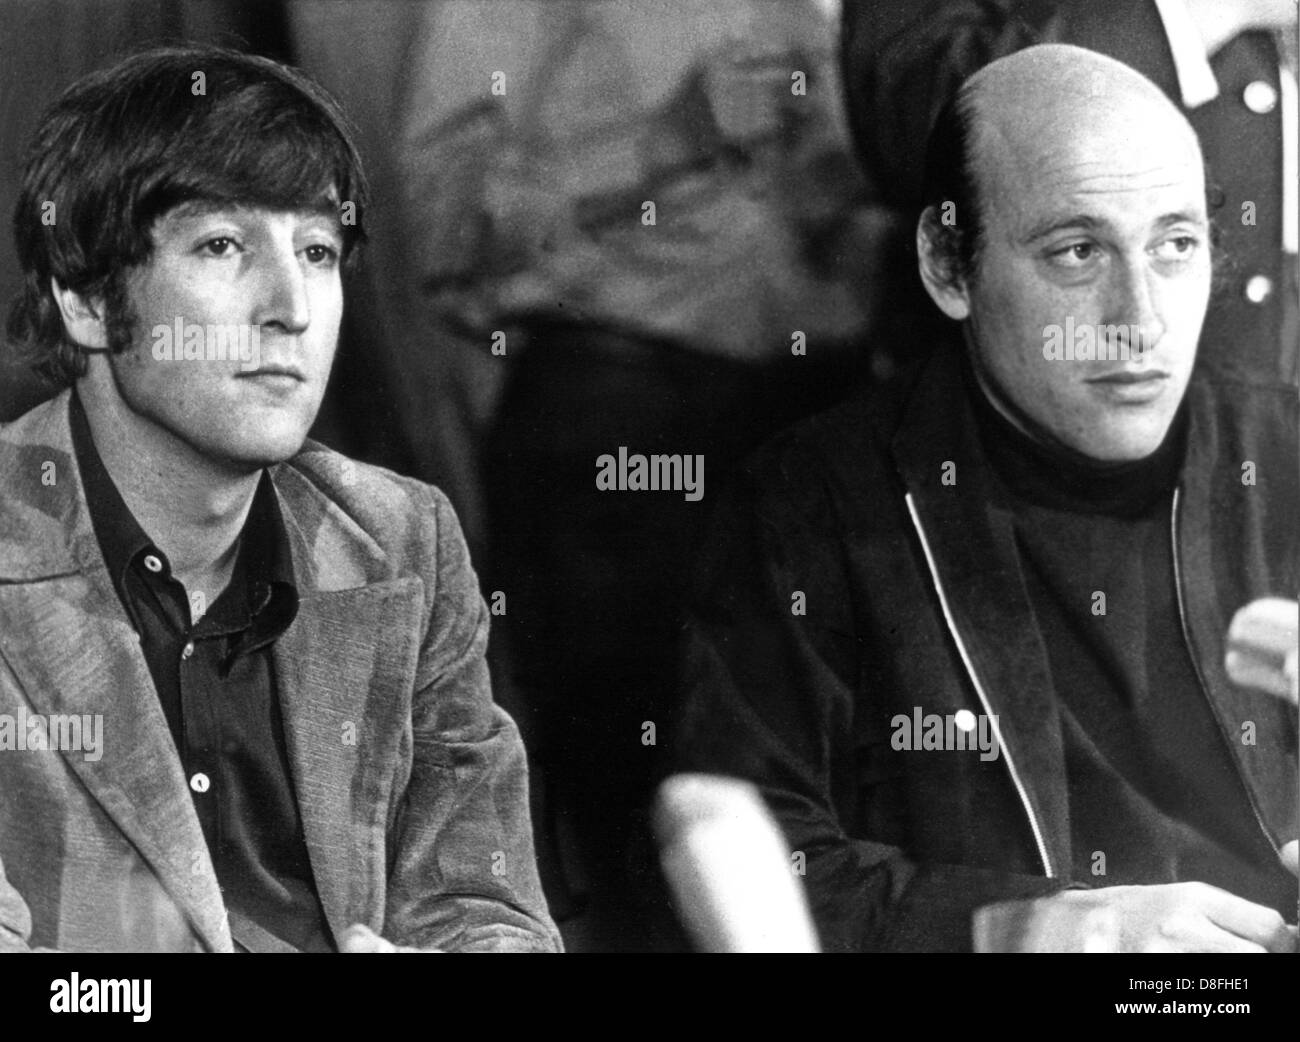 El director estadounidense Richard Lester (r) y el actor John Lennon (l), conocido como uno de los Beatles, en septiembre de 1966, durante una conferencia de prensa en Hamburgo. John Lennon actúa en la nueva película de Lester 'Cómo gané la guerra'. Foto de stock